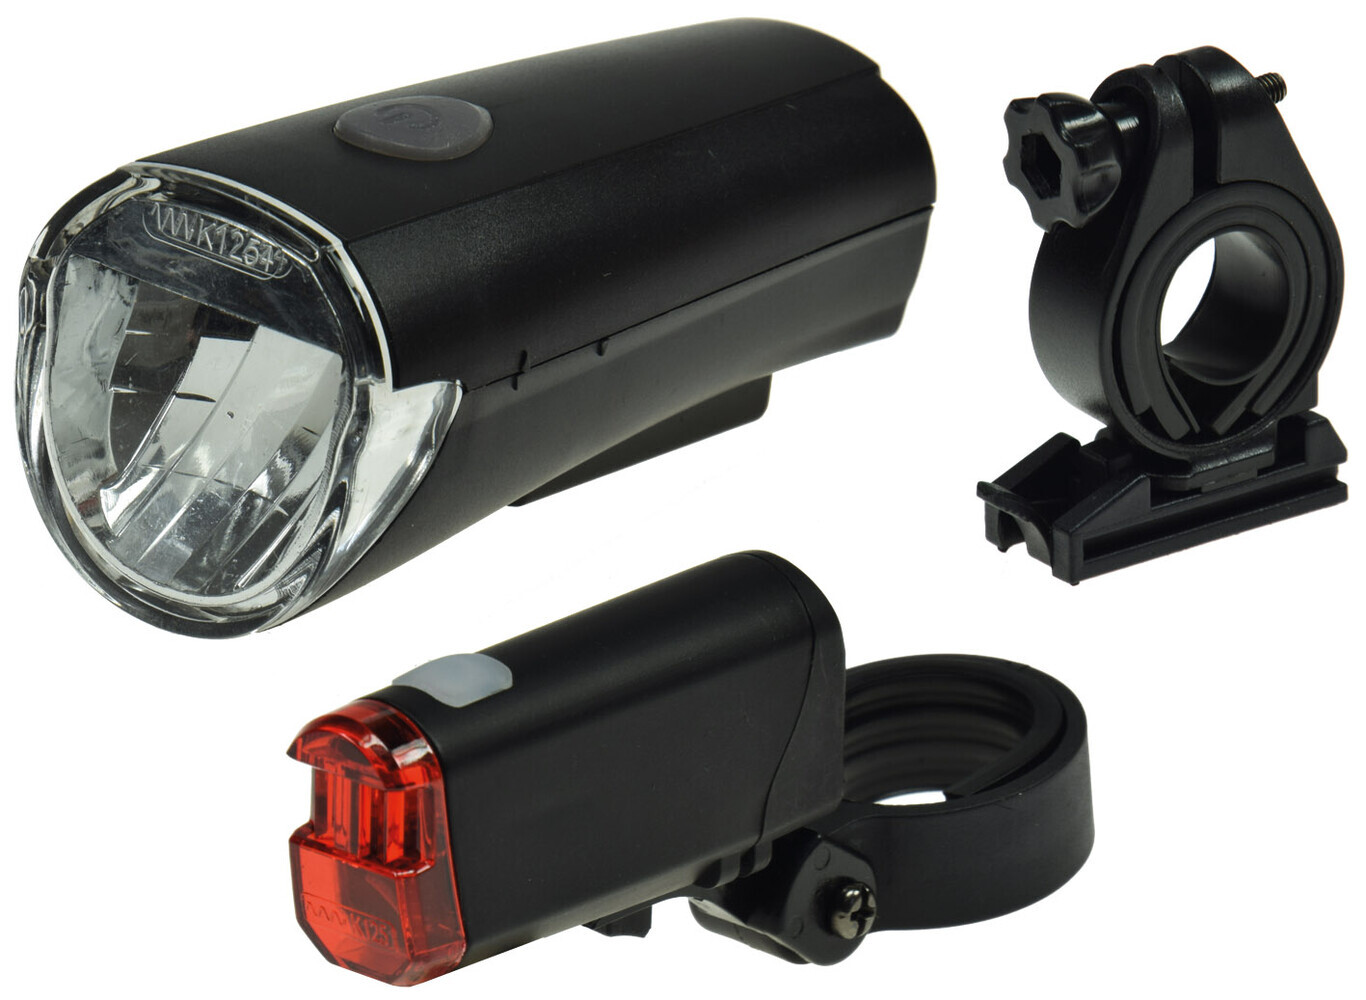 Hochwertige, StVZO zugelassene Fahrradbeleuchtung von ChiliTec mit 30Lux Leuchtstärke und praktischem Batteriebetrieb